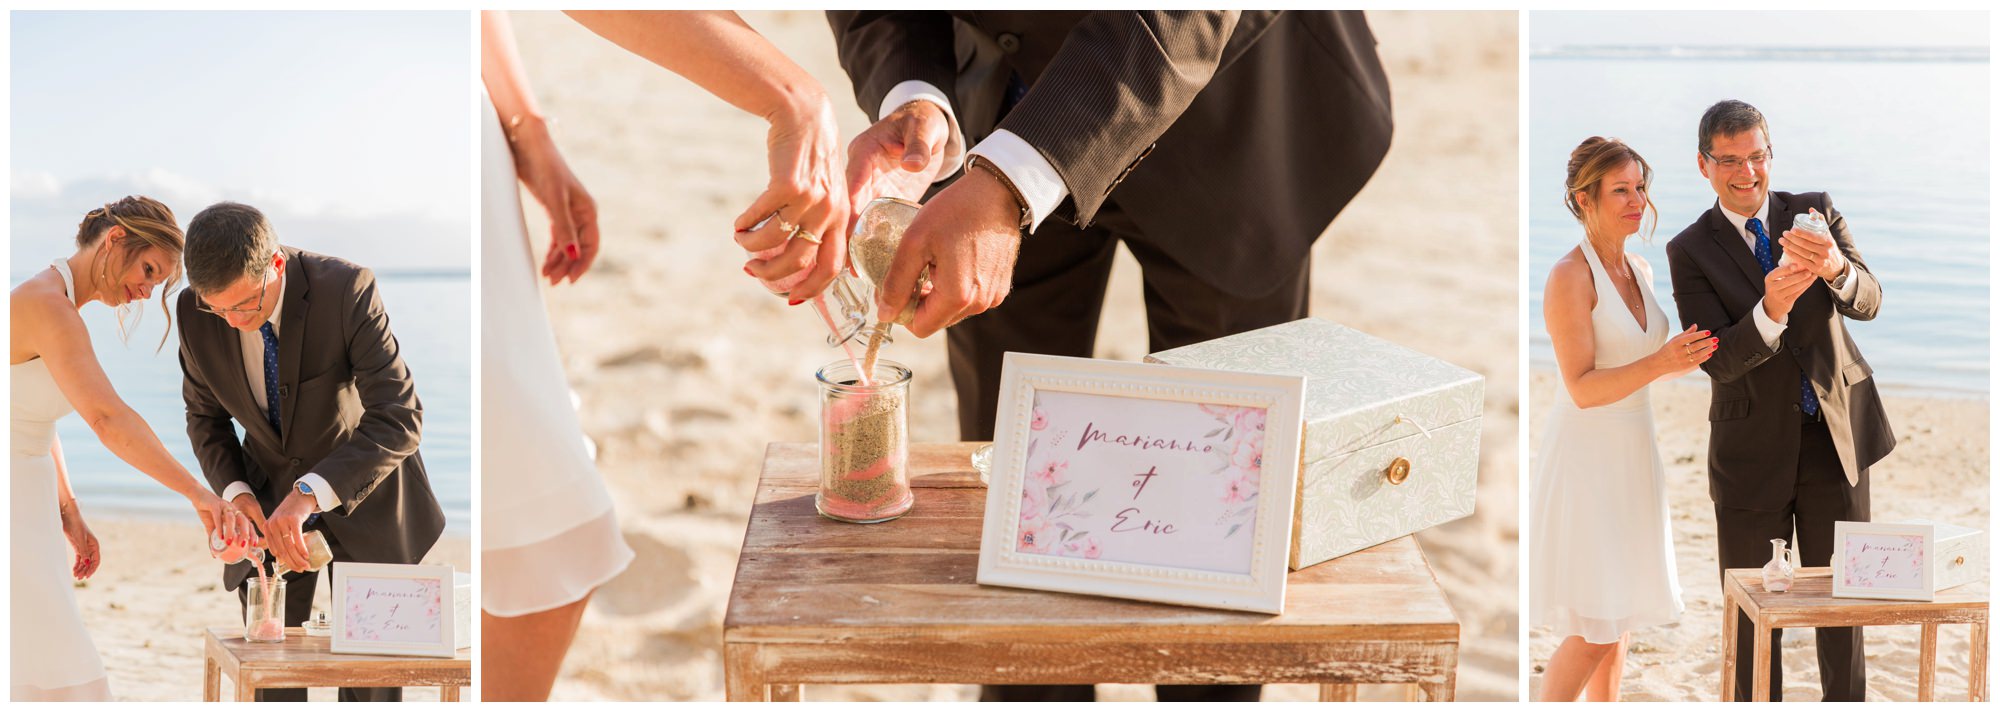 Rituel du sable lors d'une cérémonie de renouvellement de voeux de mariage